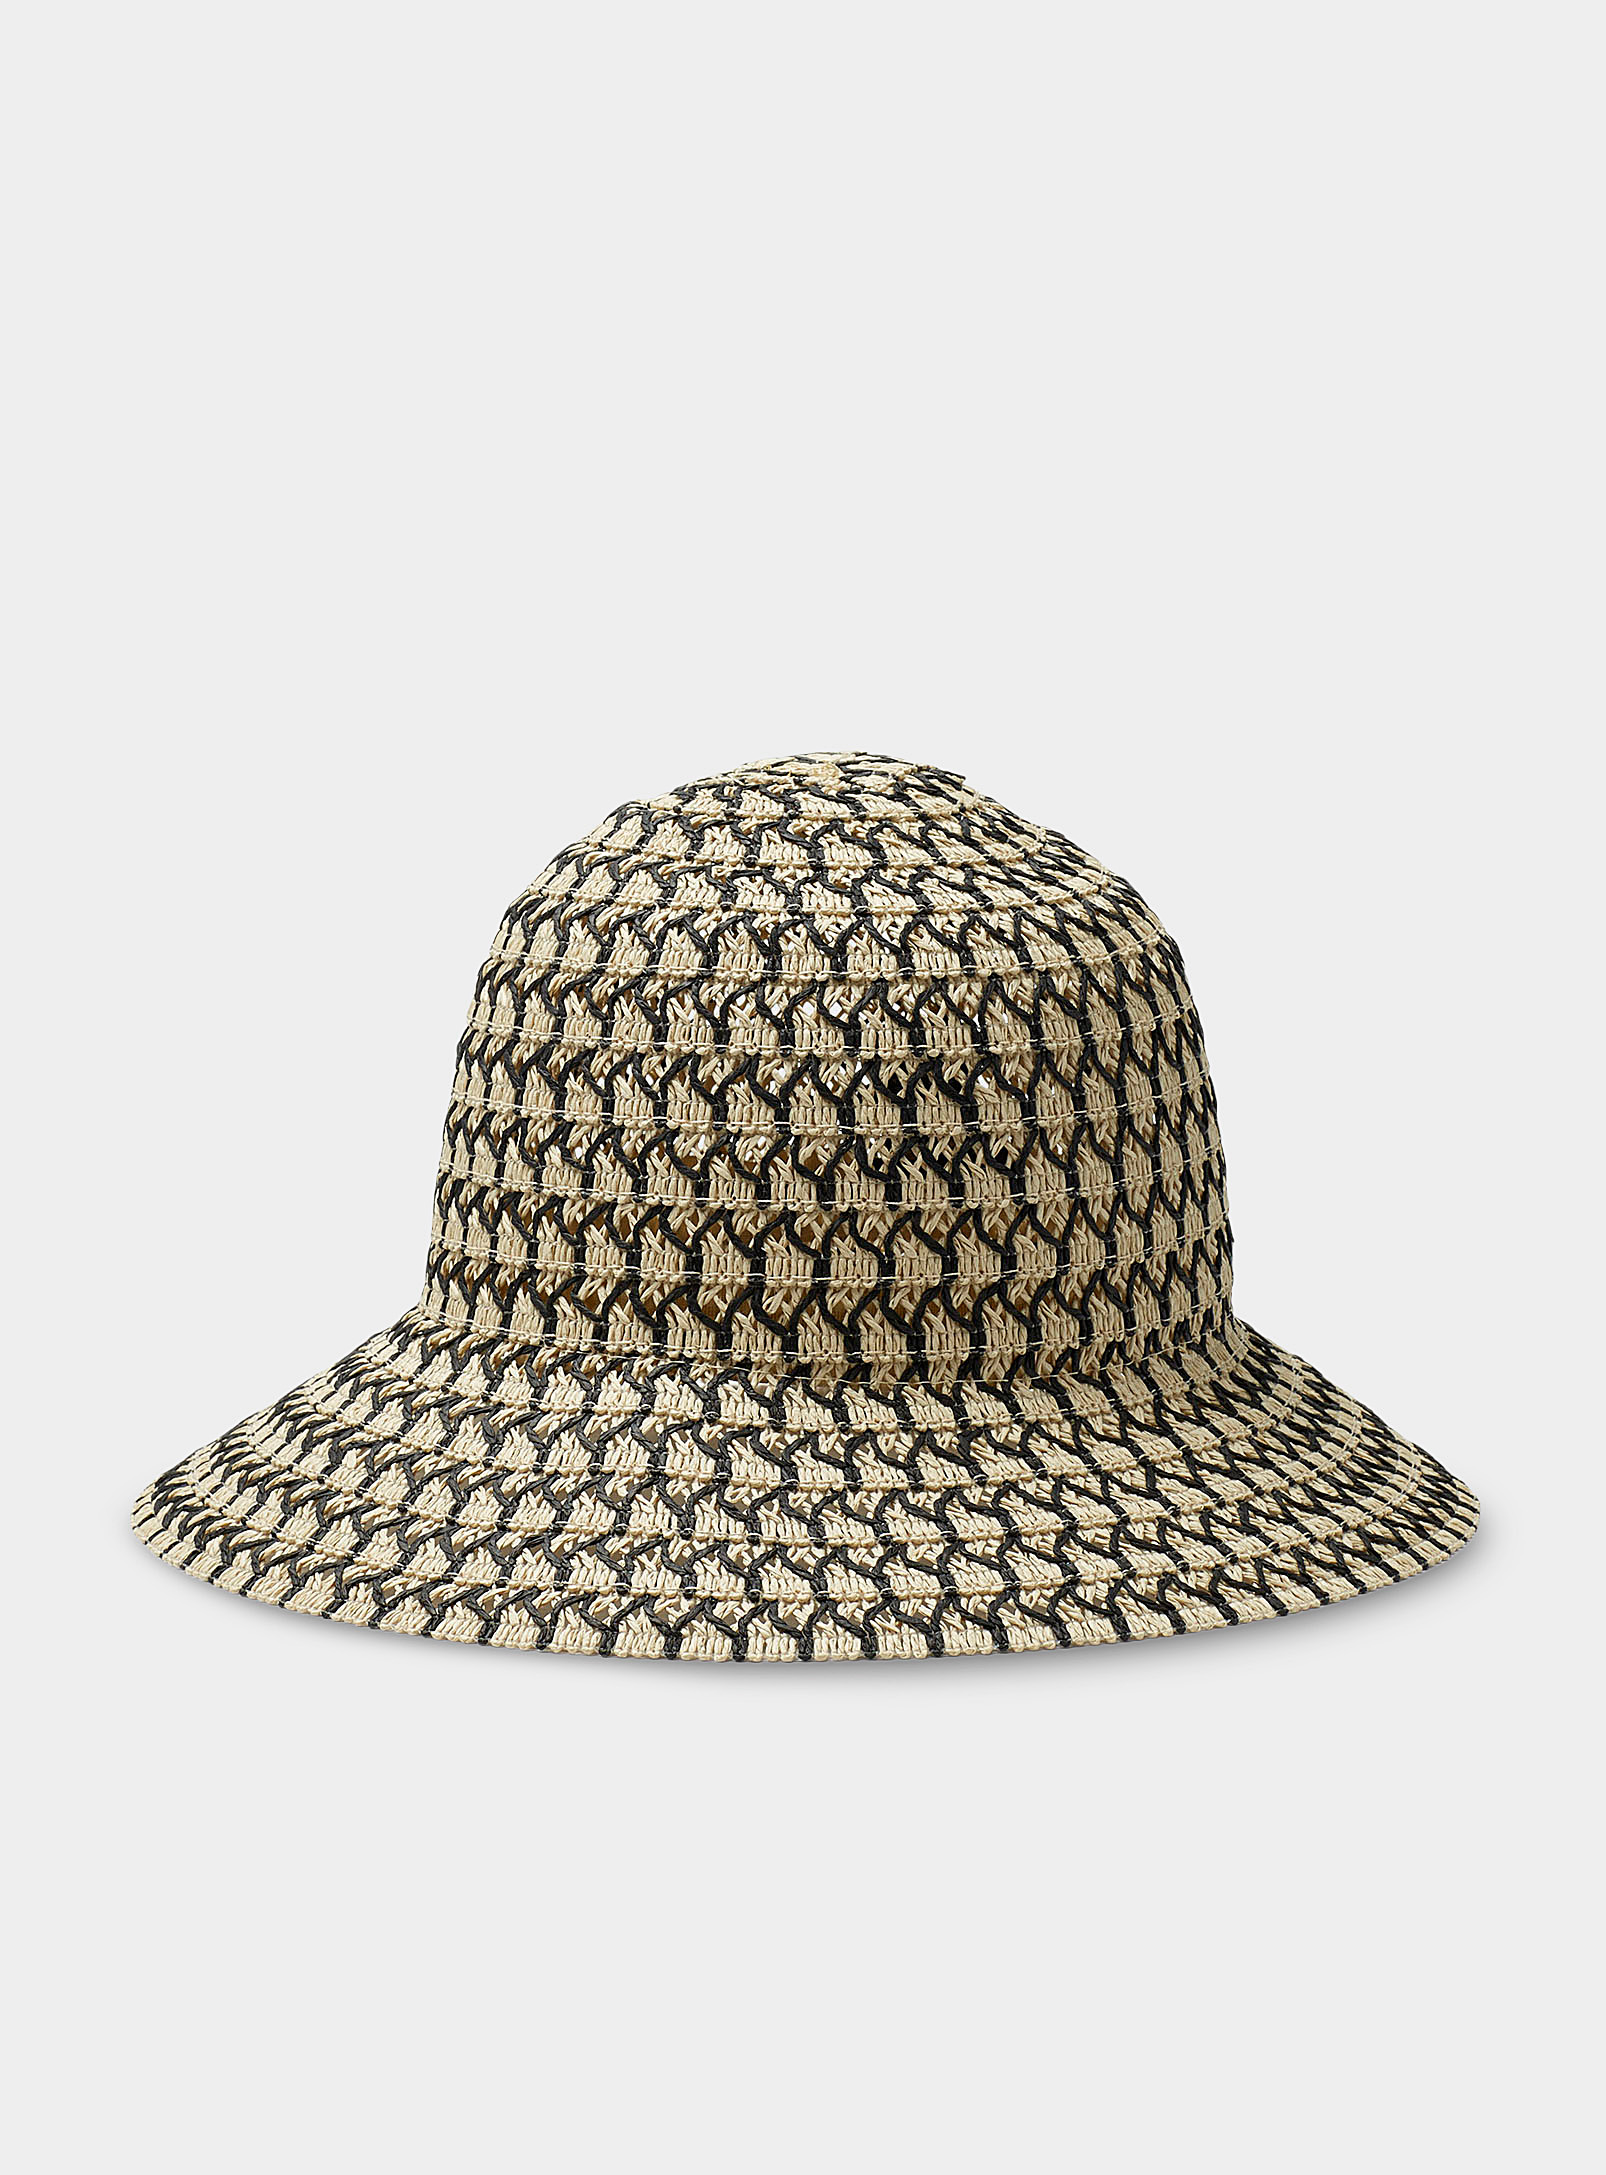 Simons - Women's Geo braided straw Cloche Hat